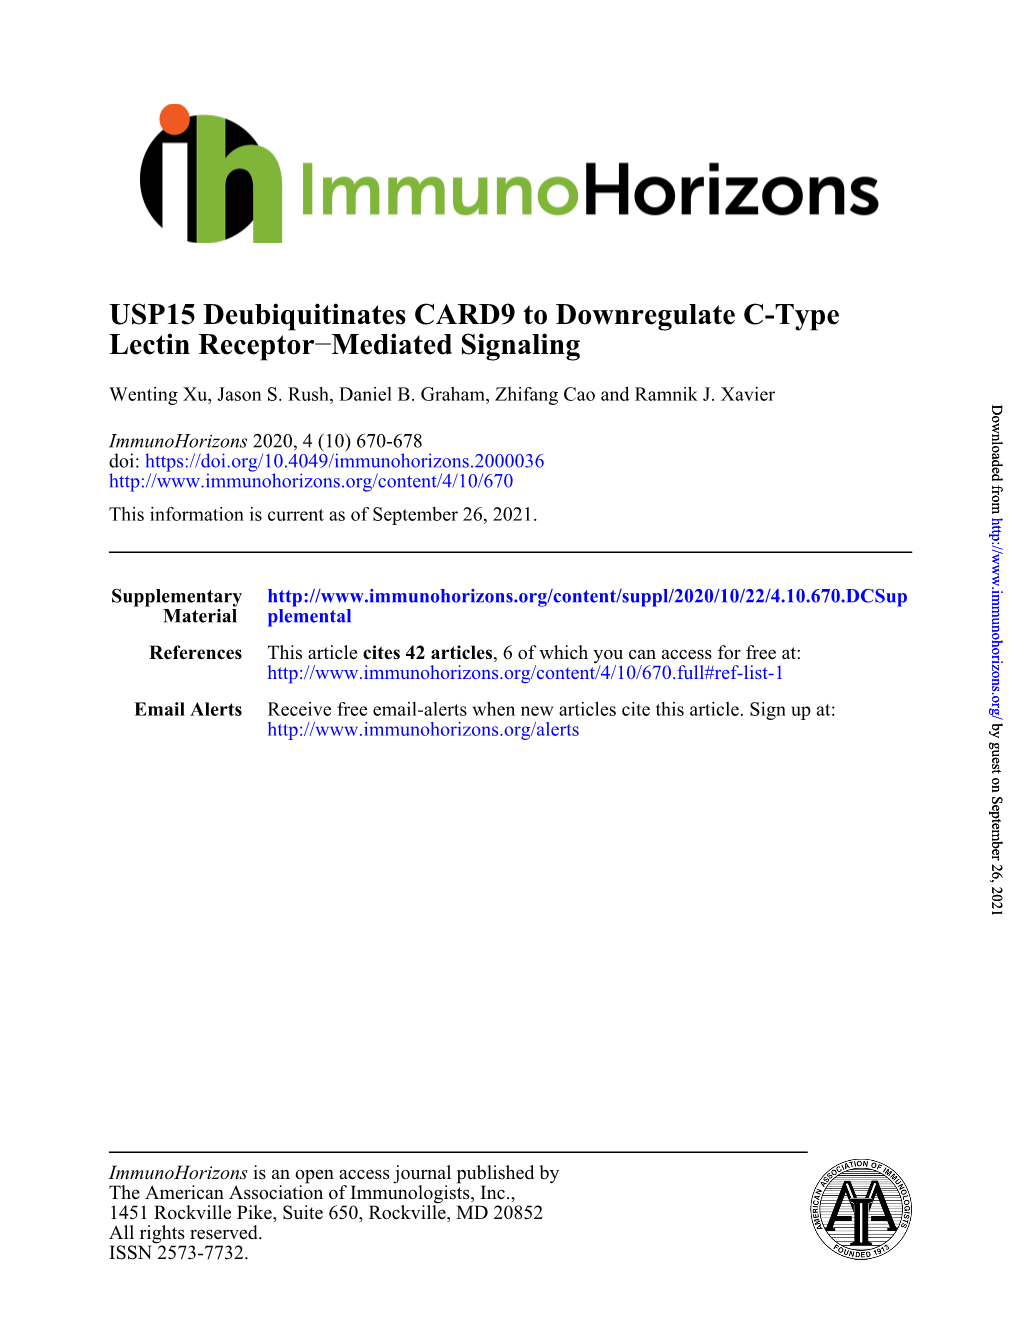 Mediated Signaling − Lectin Receptor USP15 Deubiquitinates CARD9 to Downregulate C-Type